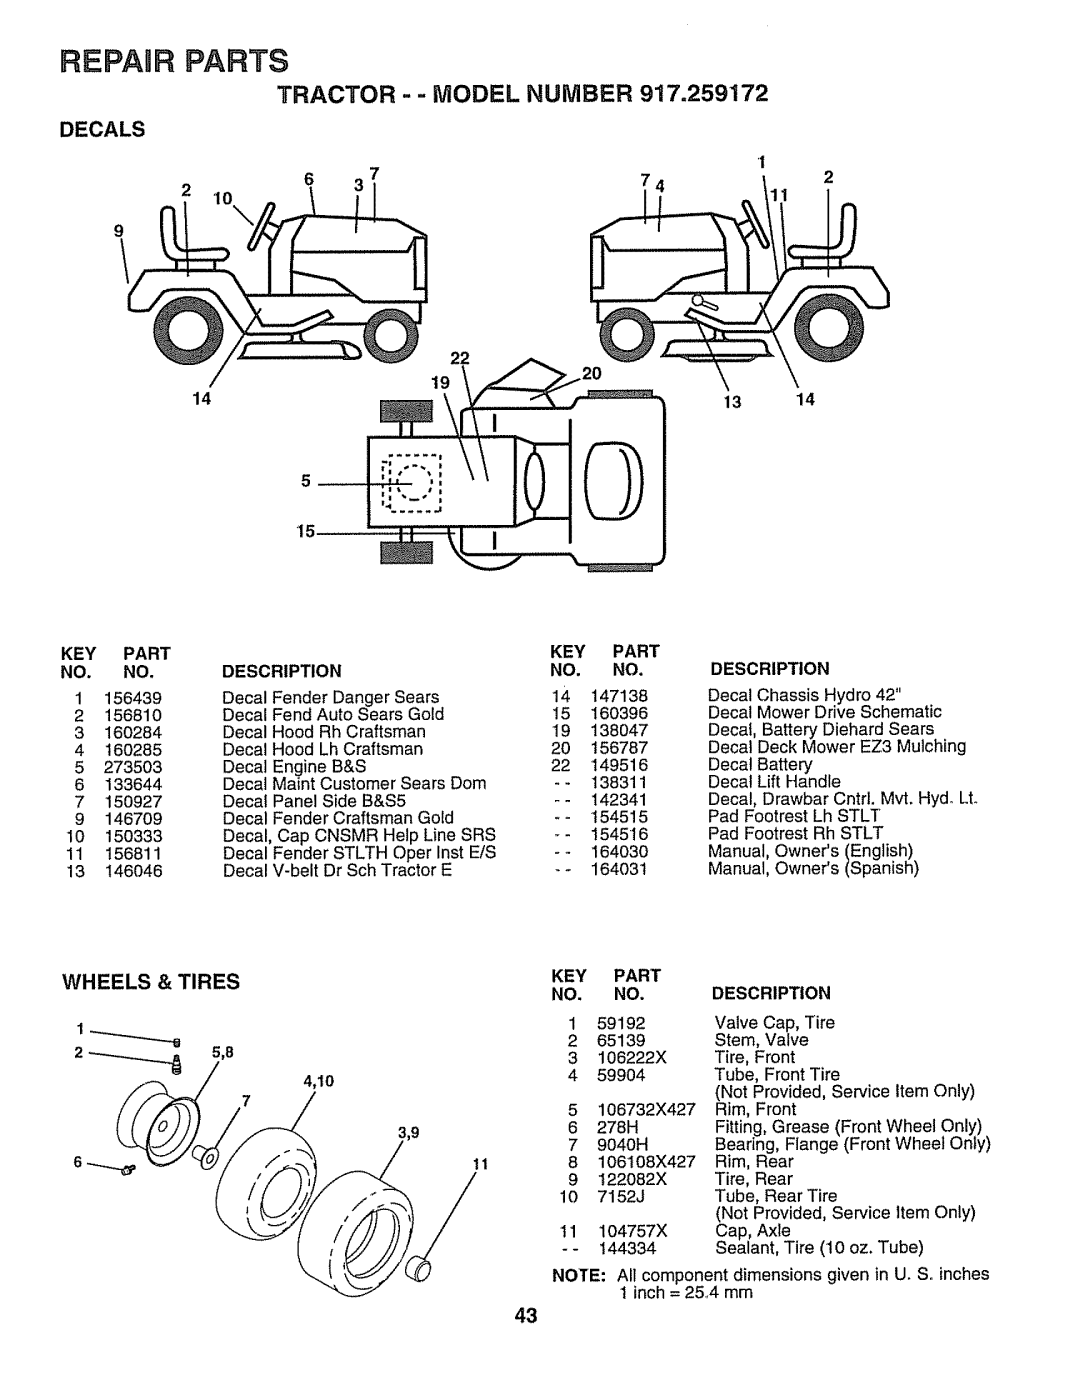 Craftsman 917.259172 manual Decals, Wheels, Tires, 22 19, 2 __, Repair Parts, Tractor - - Model Number, Description 